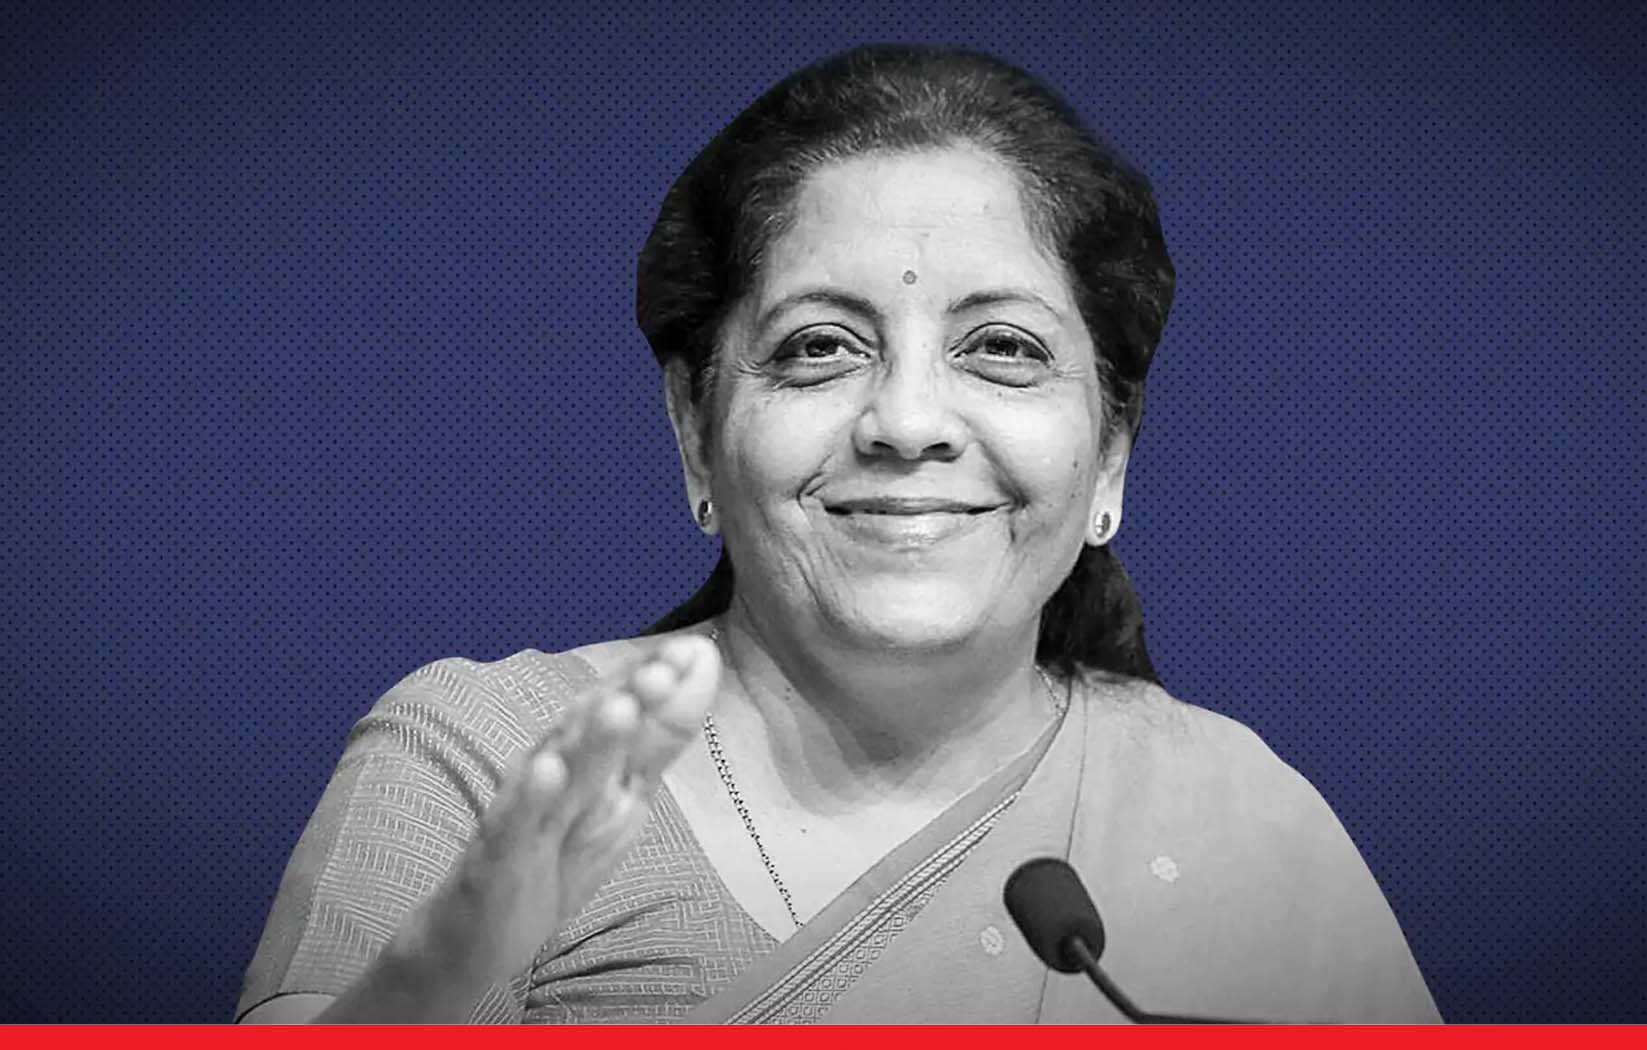 भारत की सबसे पावरफुल महिला बनी वित्त मंत्री निर्मला सीतारमण